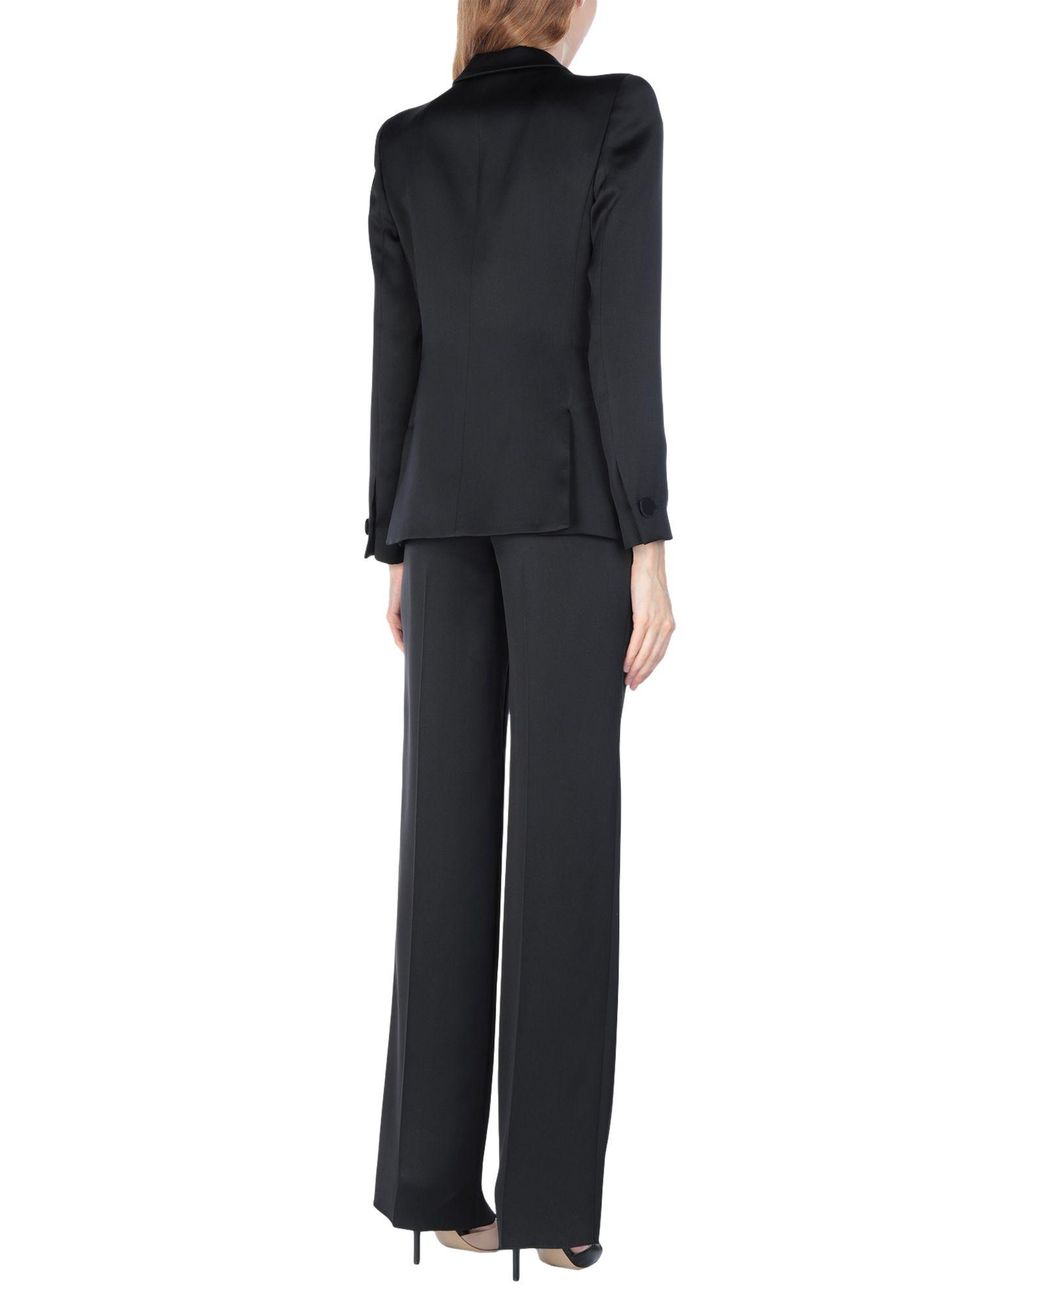 Giorgio Armani Women's Suit in Black | Lyst